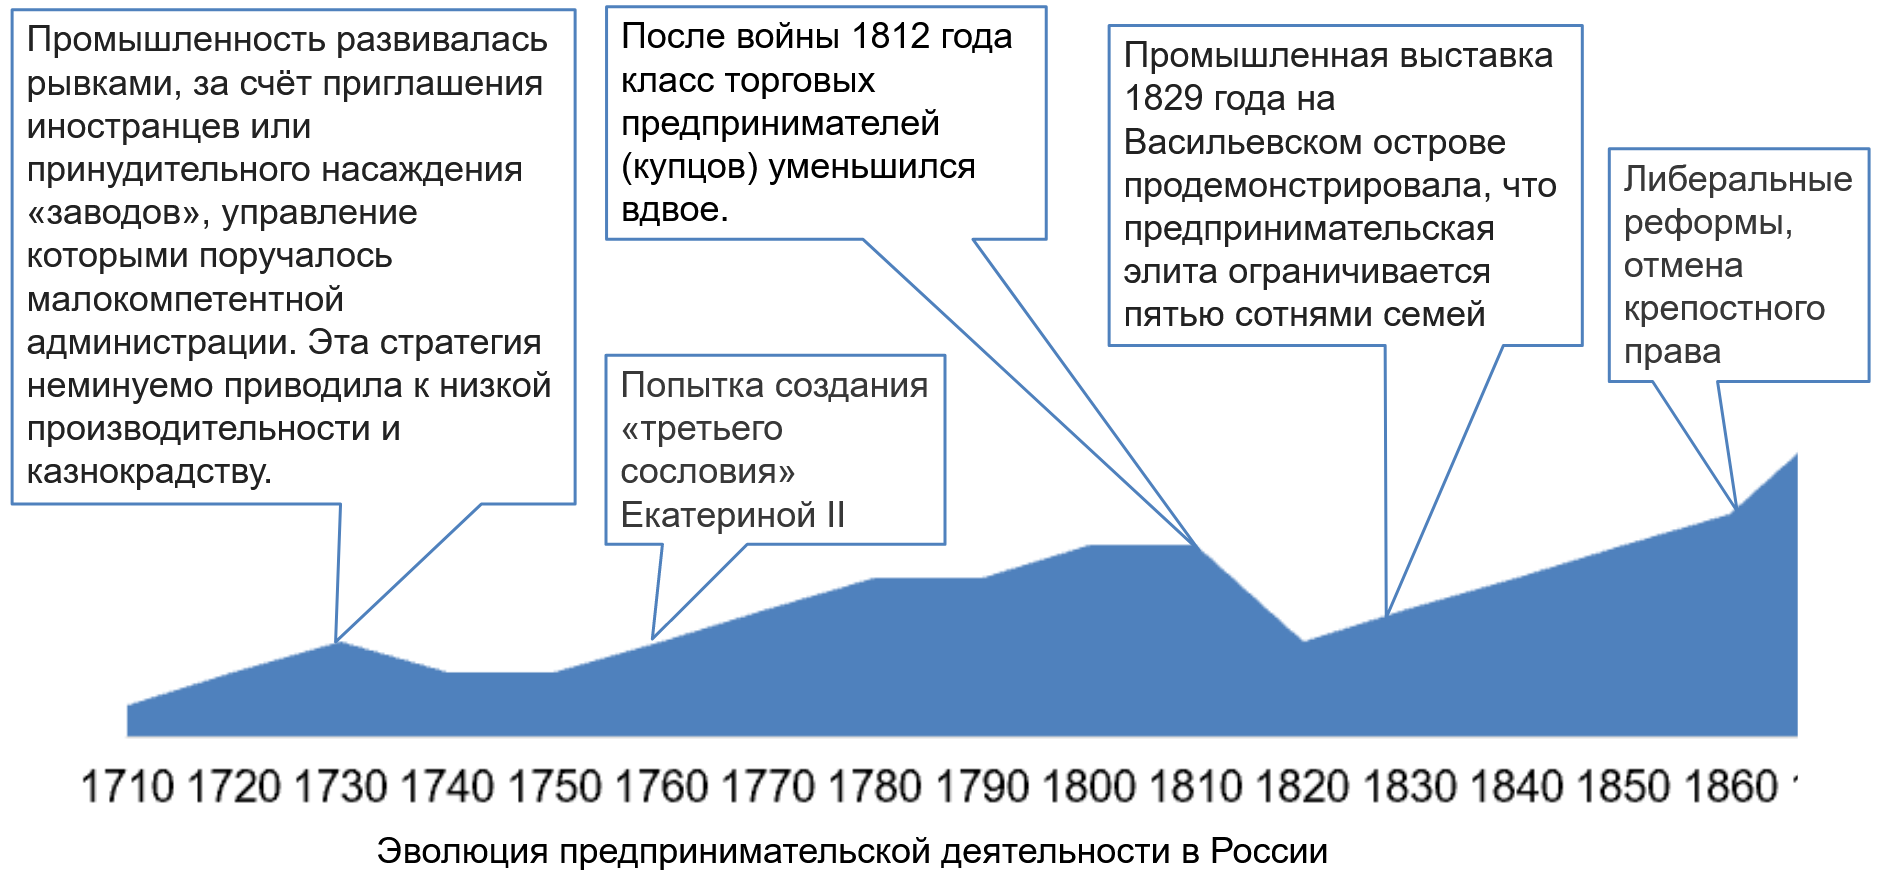 эволюция предпринмательской деятельности в России